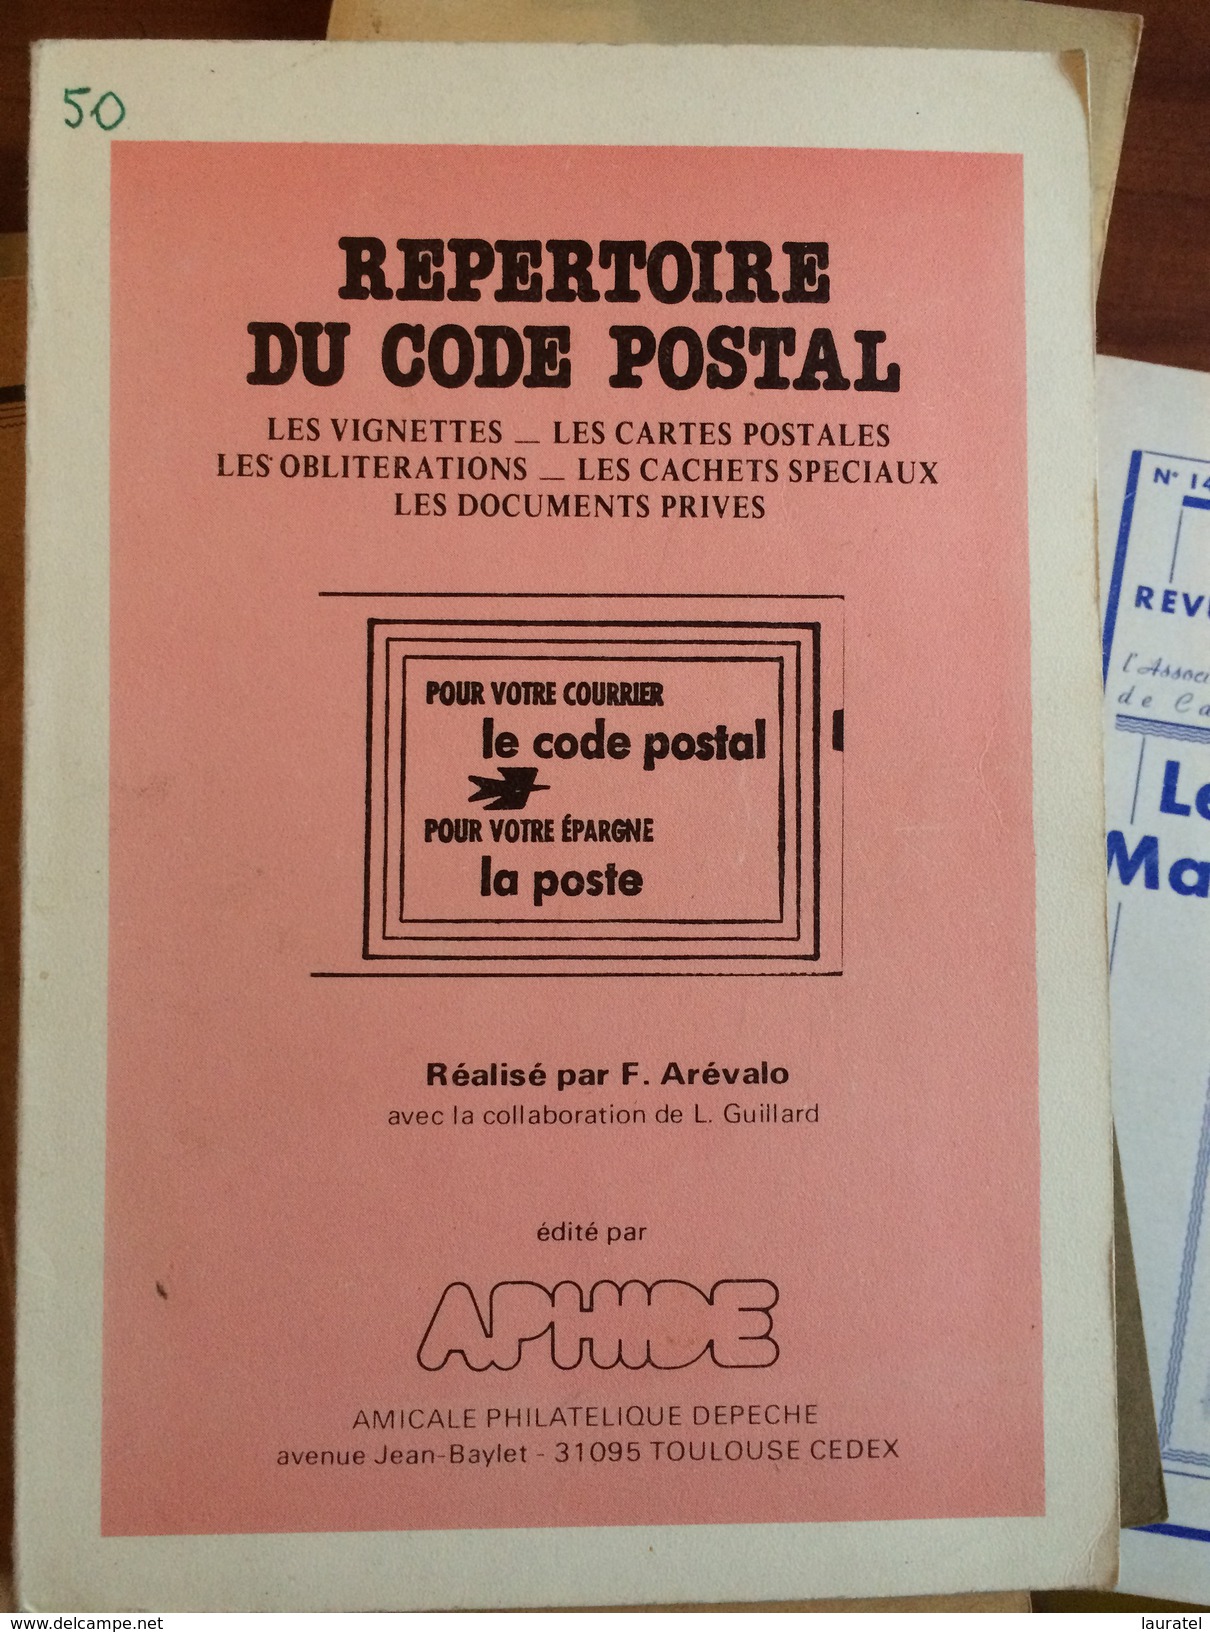 AREVALO F 1982. - REPERTOIRE CODE POSTAL, BROCHURE DE 144 PAGES DE1982 - TB & R - Matasellos